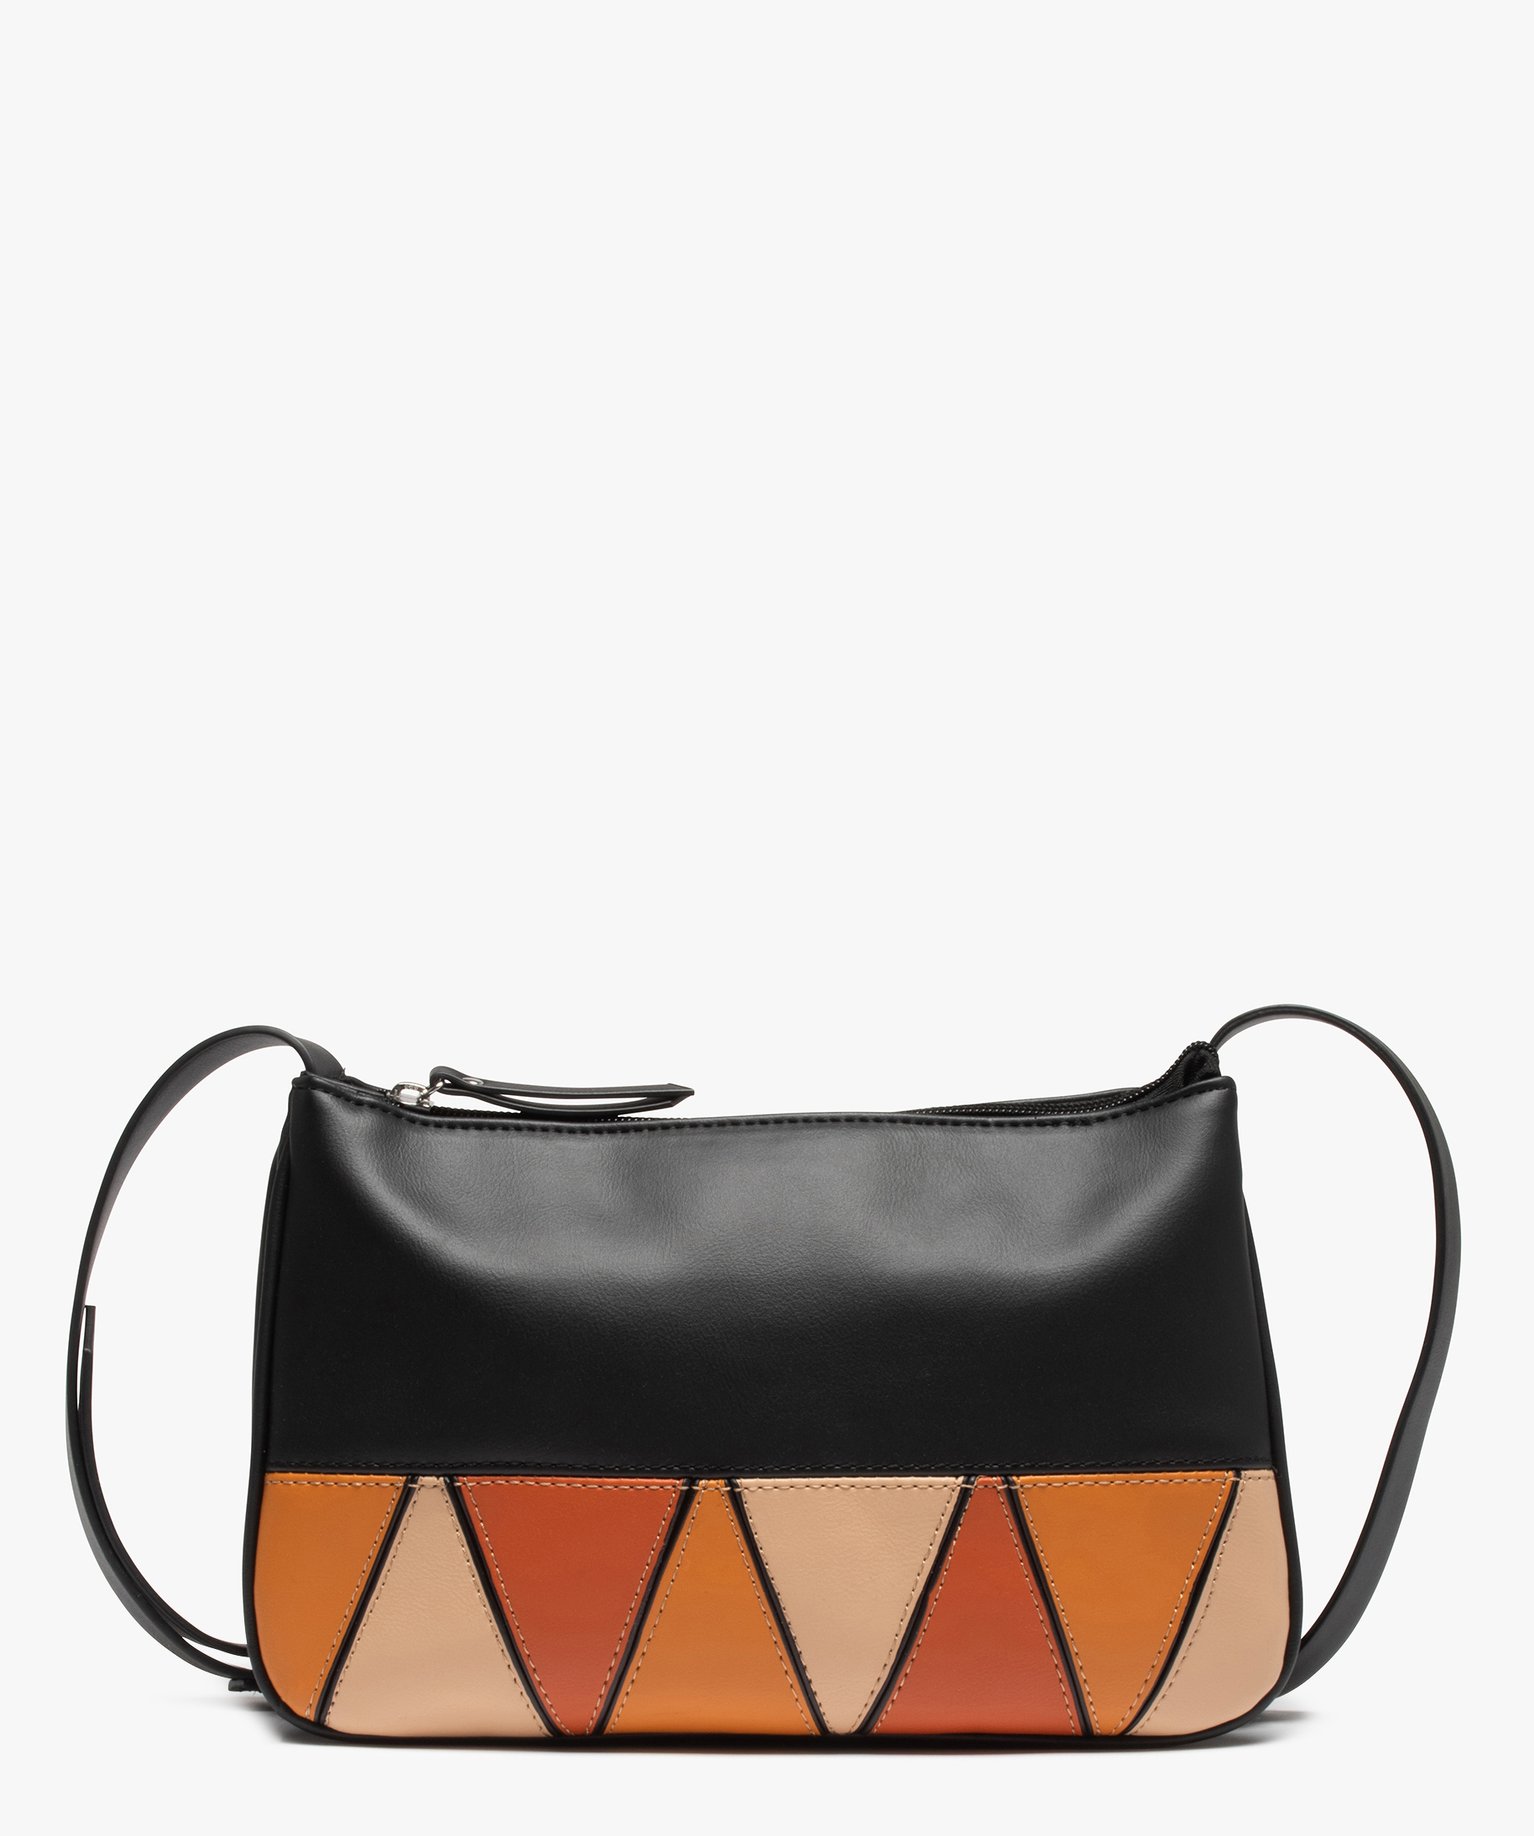 sac besace femme petit format a motifs geometriques noir sacs bandouliere